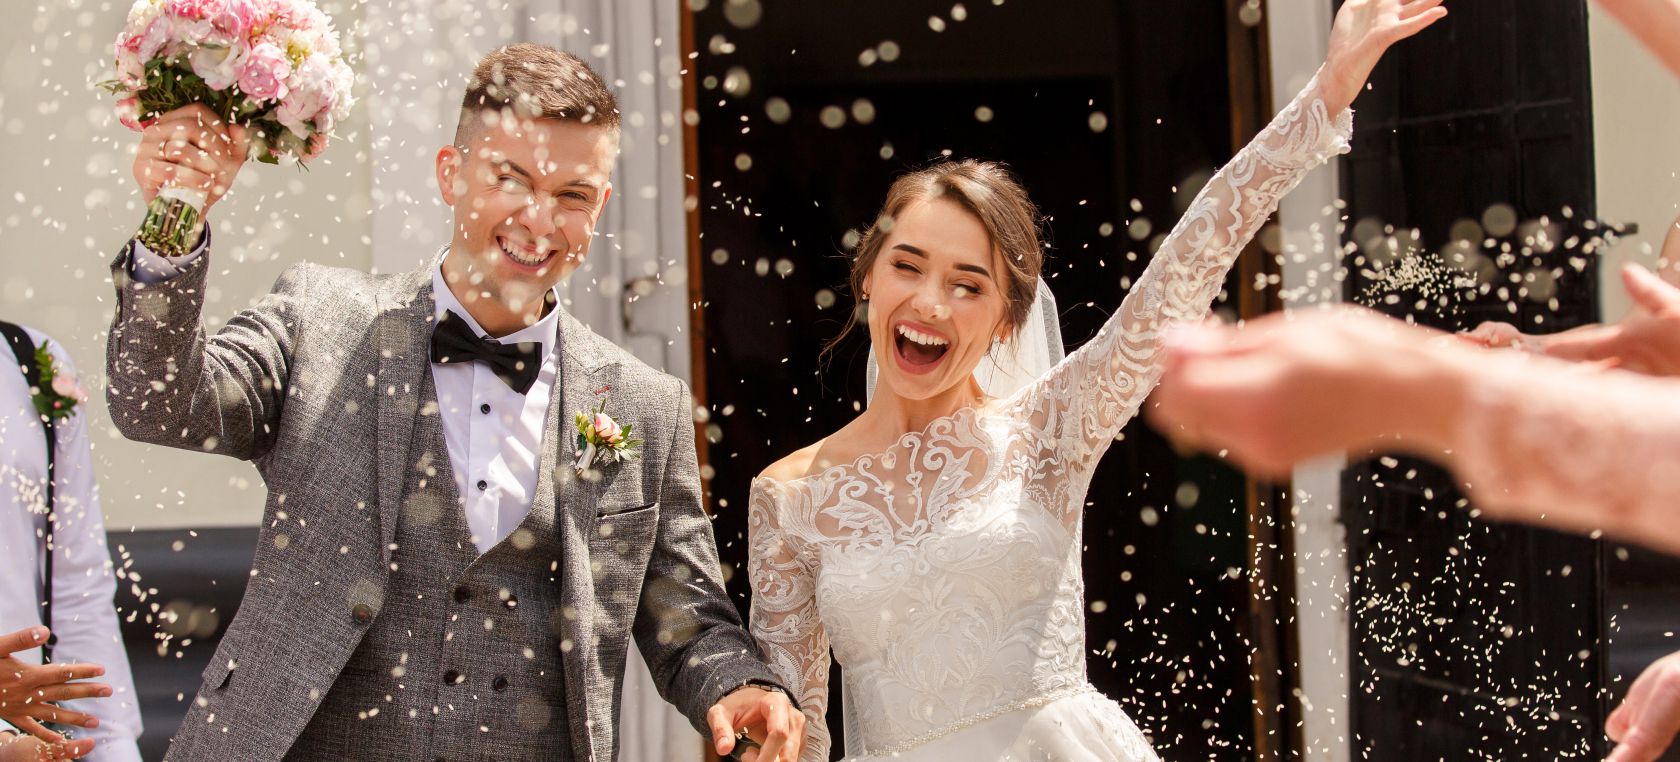 8 ideas de detalles de bodas originales con los que sorprender a los invitados